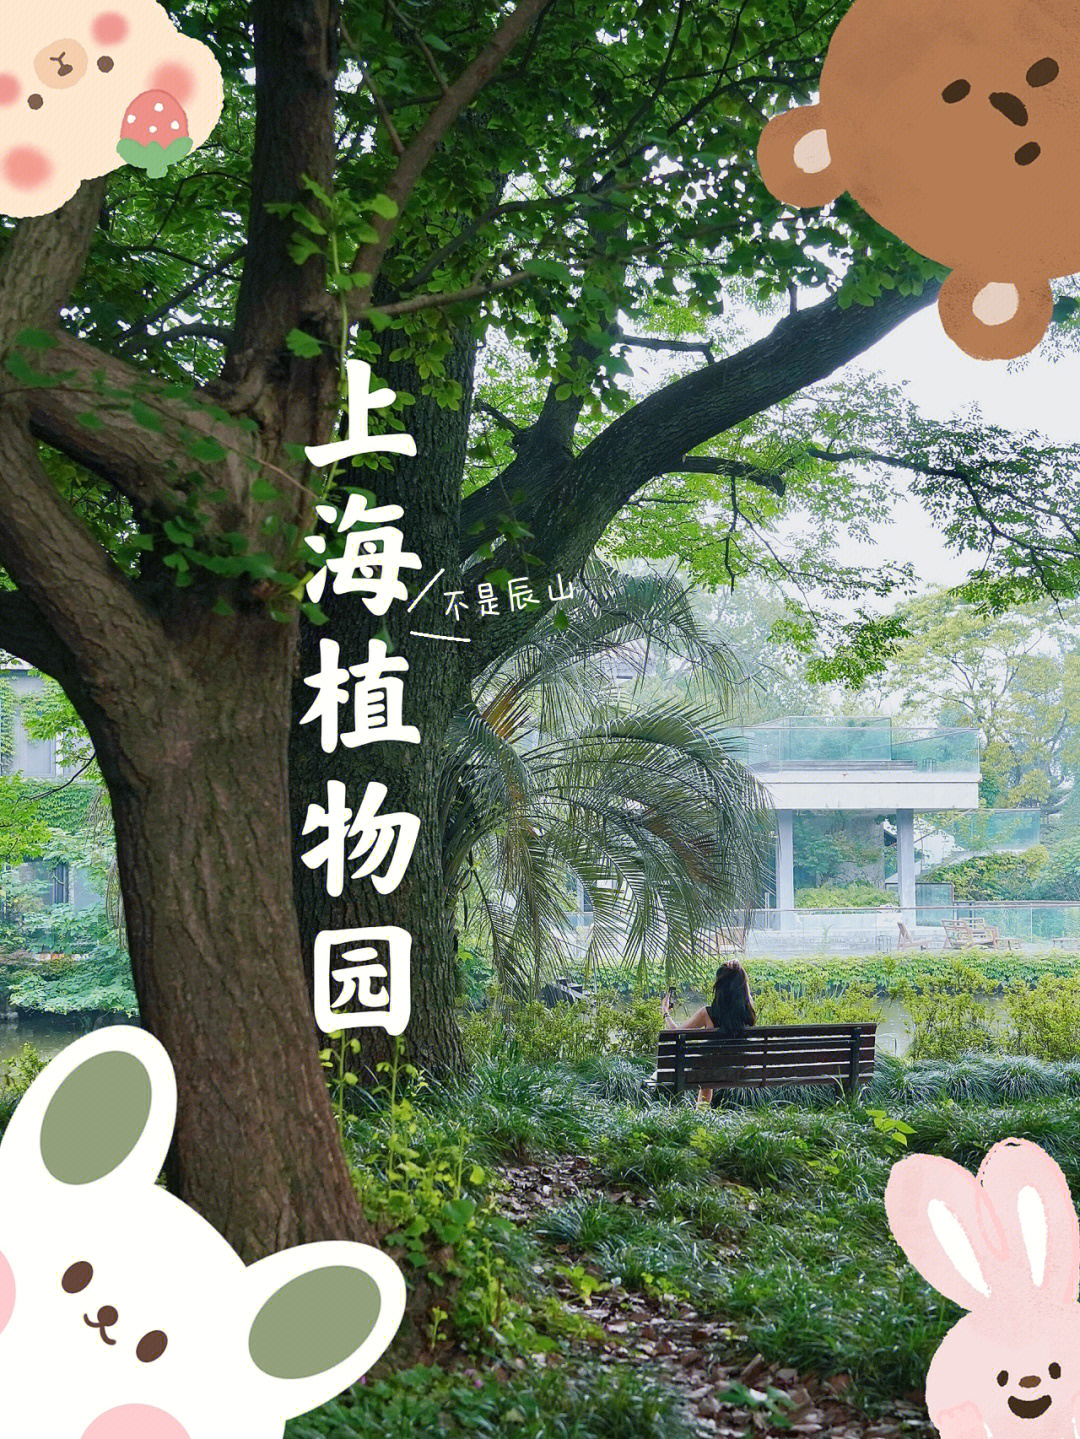 上海植物园不要门票的现实版绿野仙踪